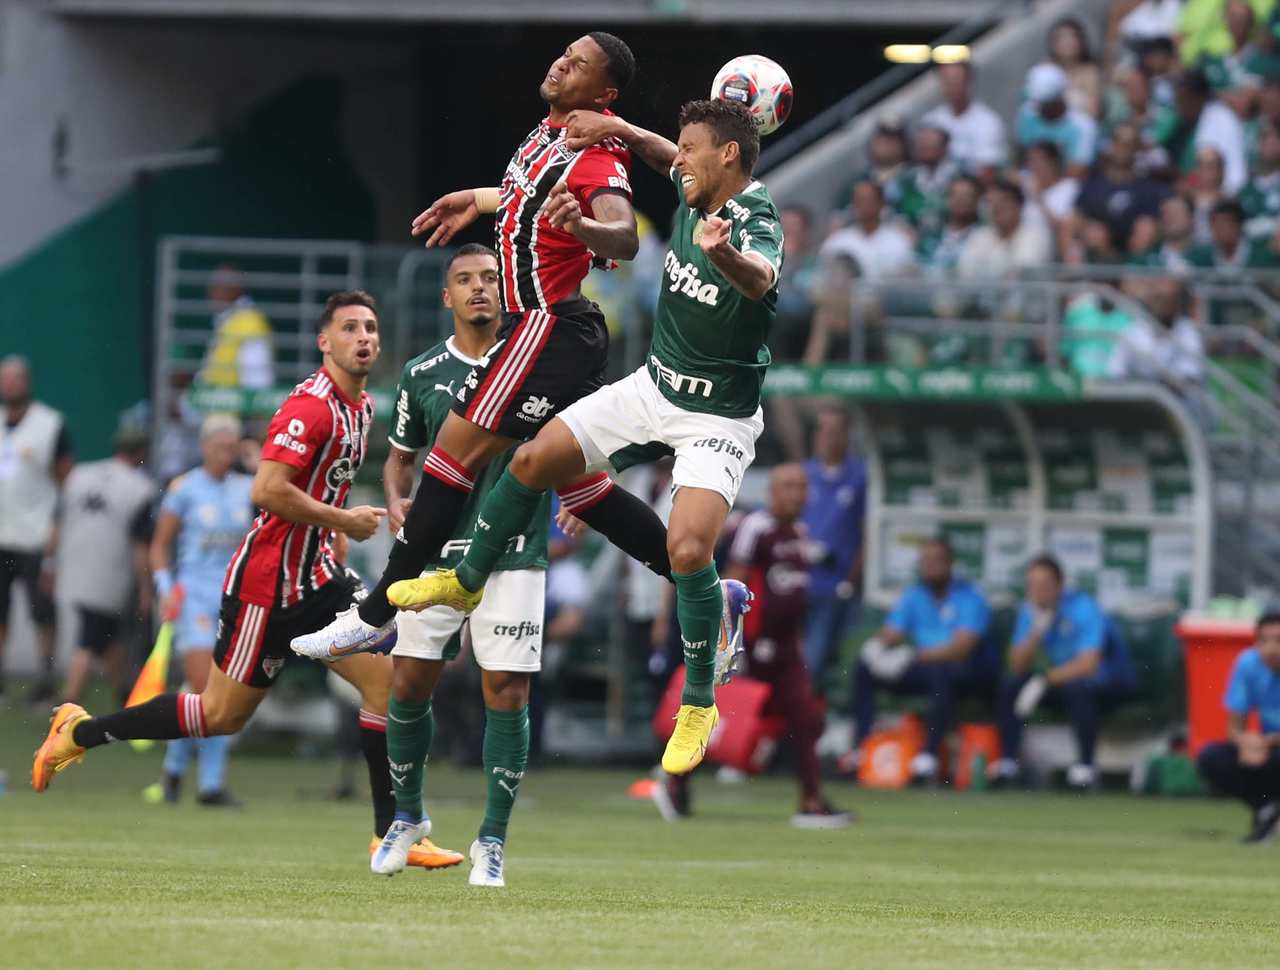 Empate sem gols entre Inter e Palmeiras fecha domingo de